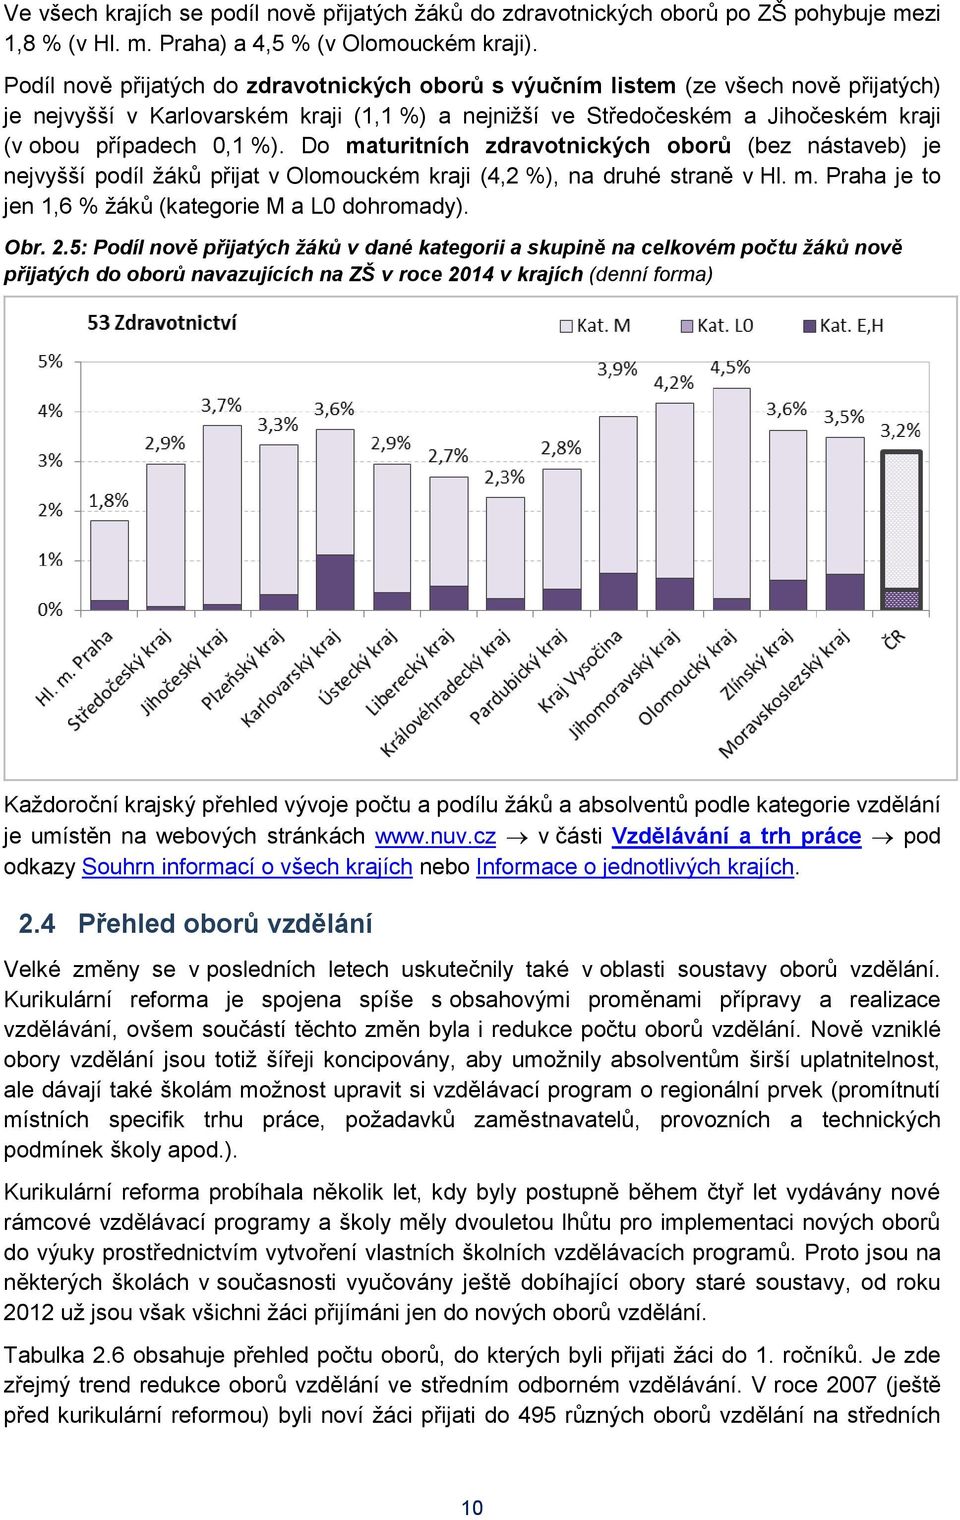 Do maturitních zdravotnických oborů (bez nástaveb) je nejvyšší podíl žáků přijat v Olomouckém kraji (4,2 %), na druhé straně v Hl. m. Praha je to jen 1,6 % žáků (kategorie M a L0 dohromady). Obr. 2.